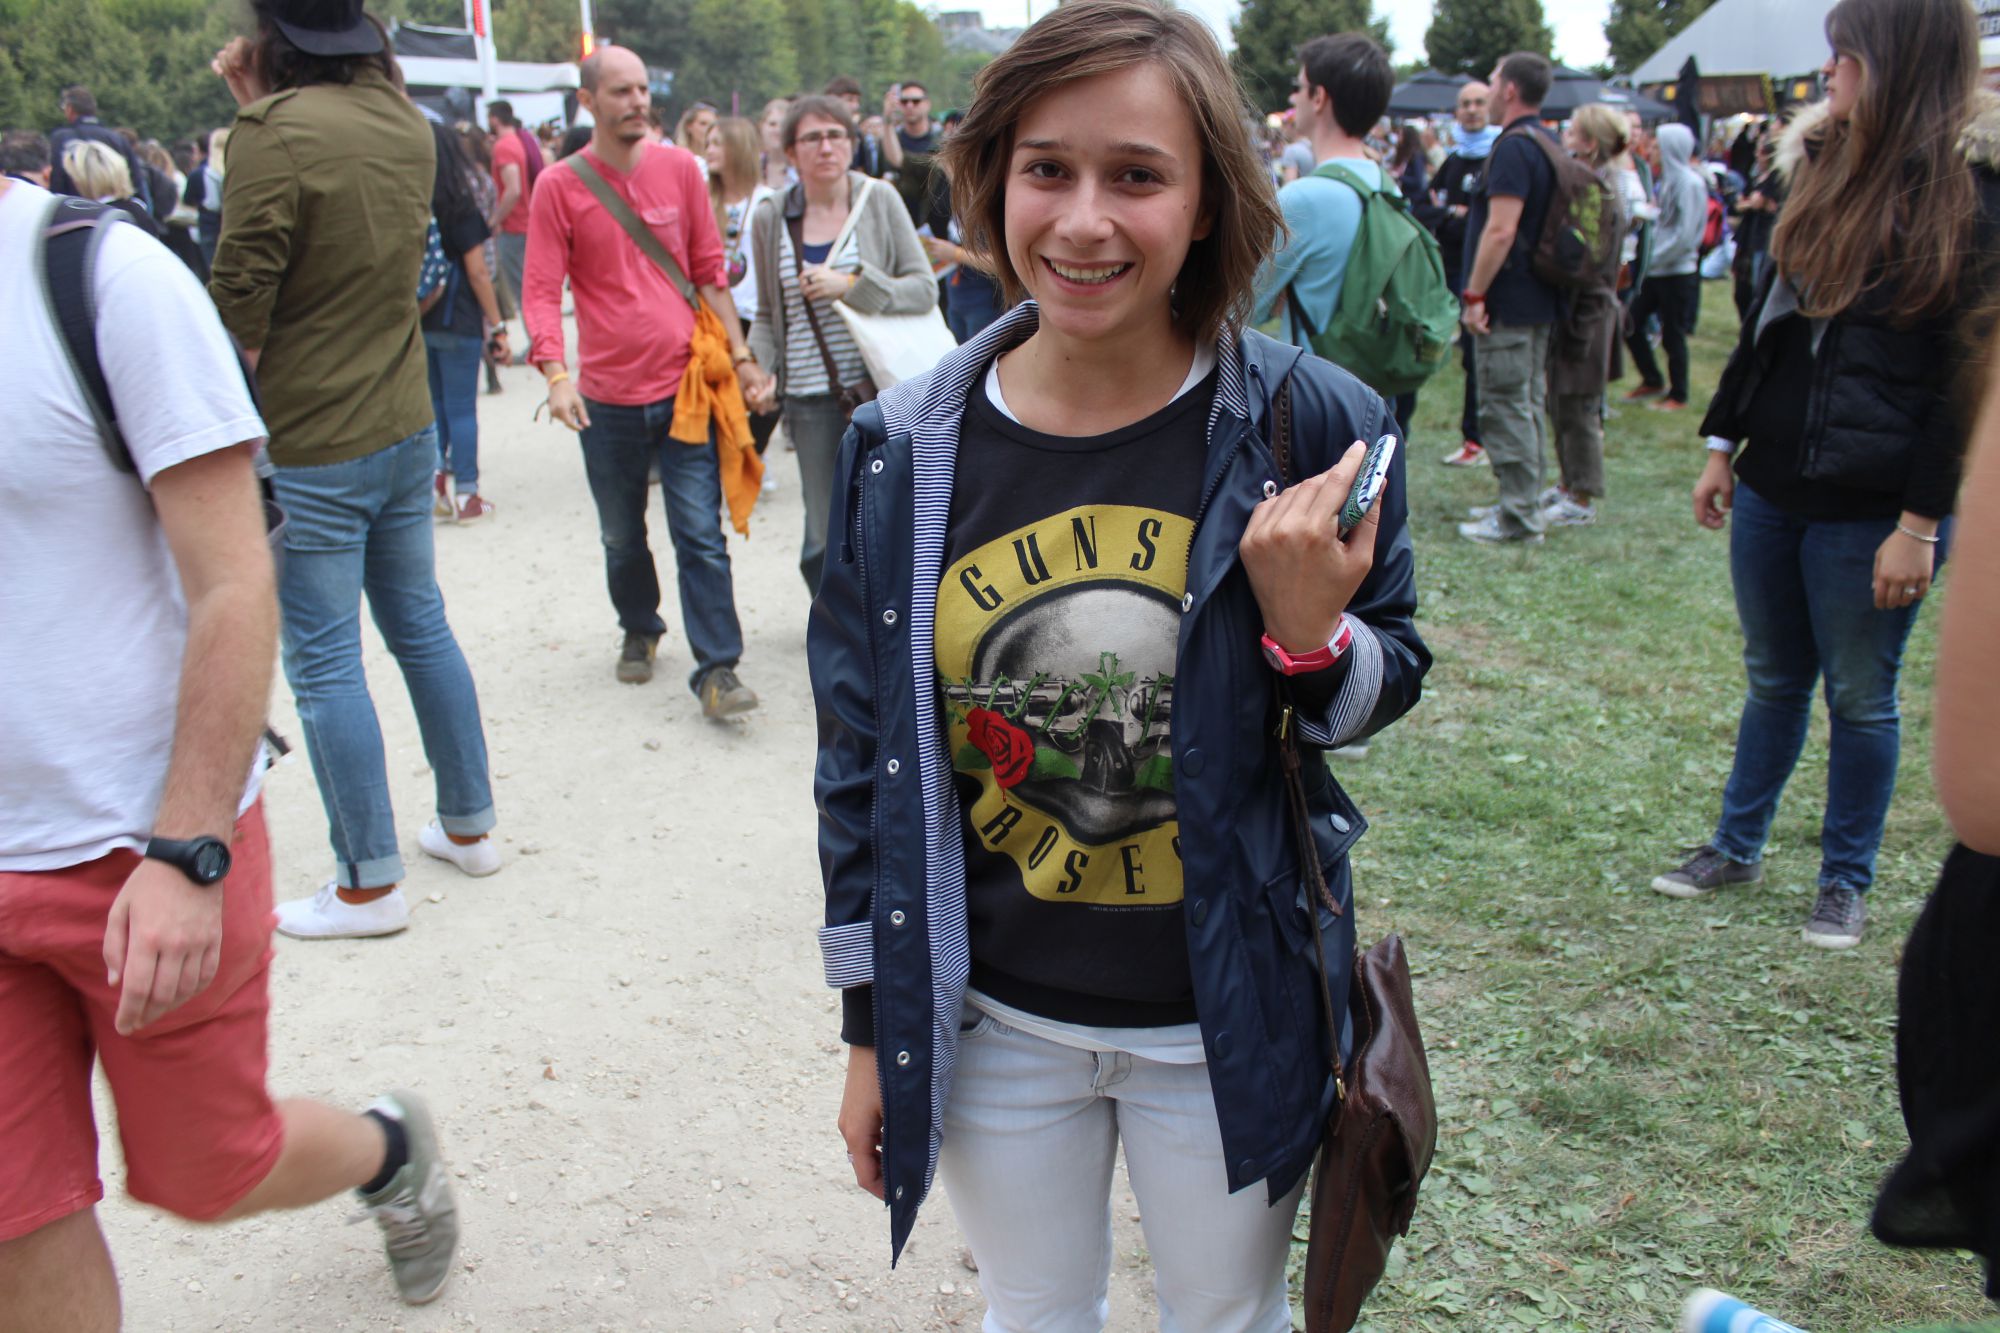 Rock en Seine 2014 : les looks des festivalier (Photo 9)